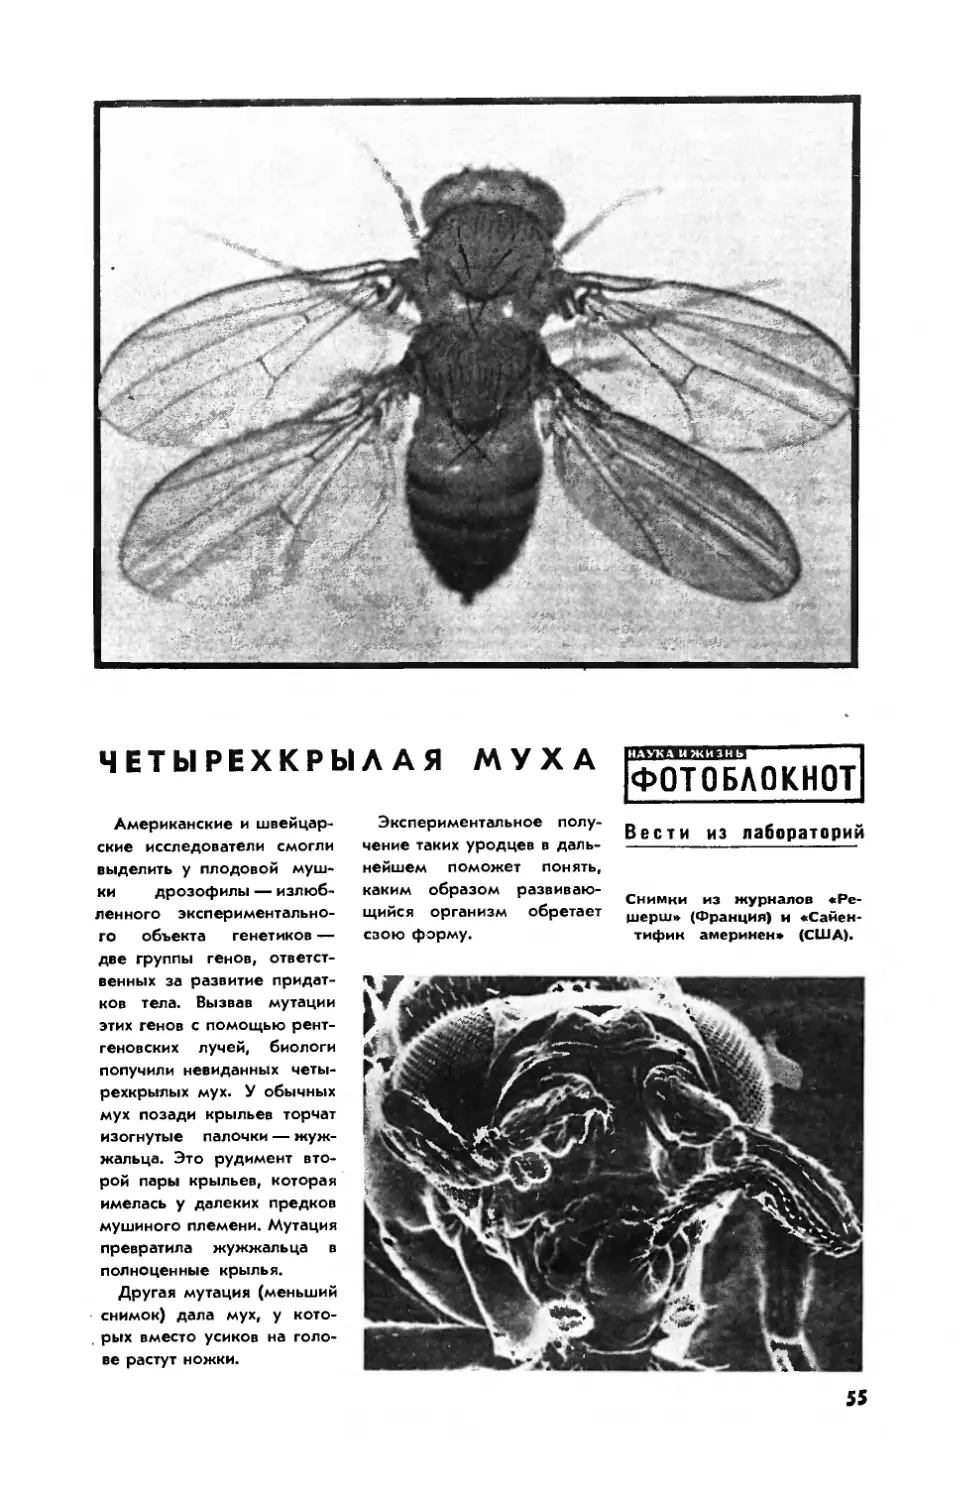 [Фотоблокнот] — Четырехкрылая муха